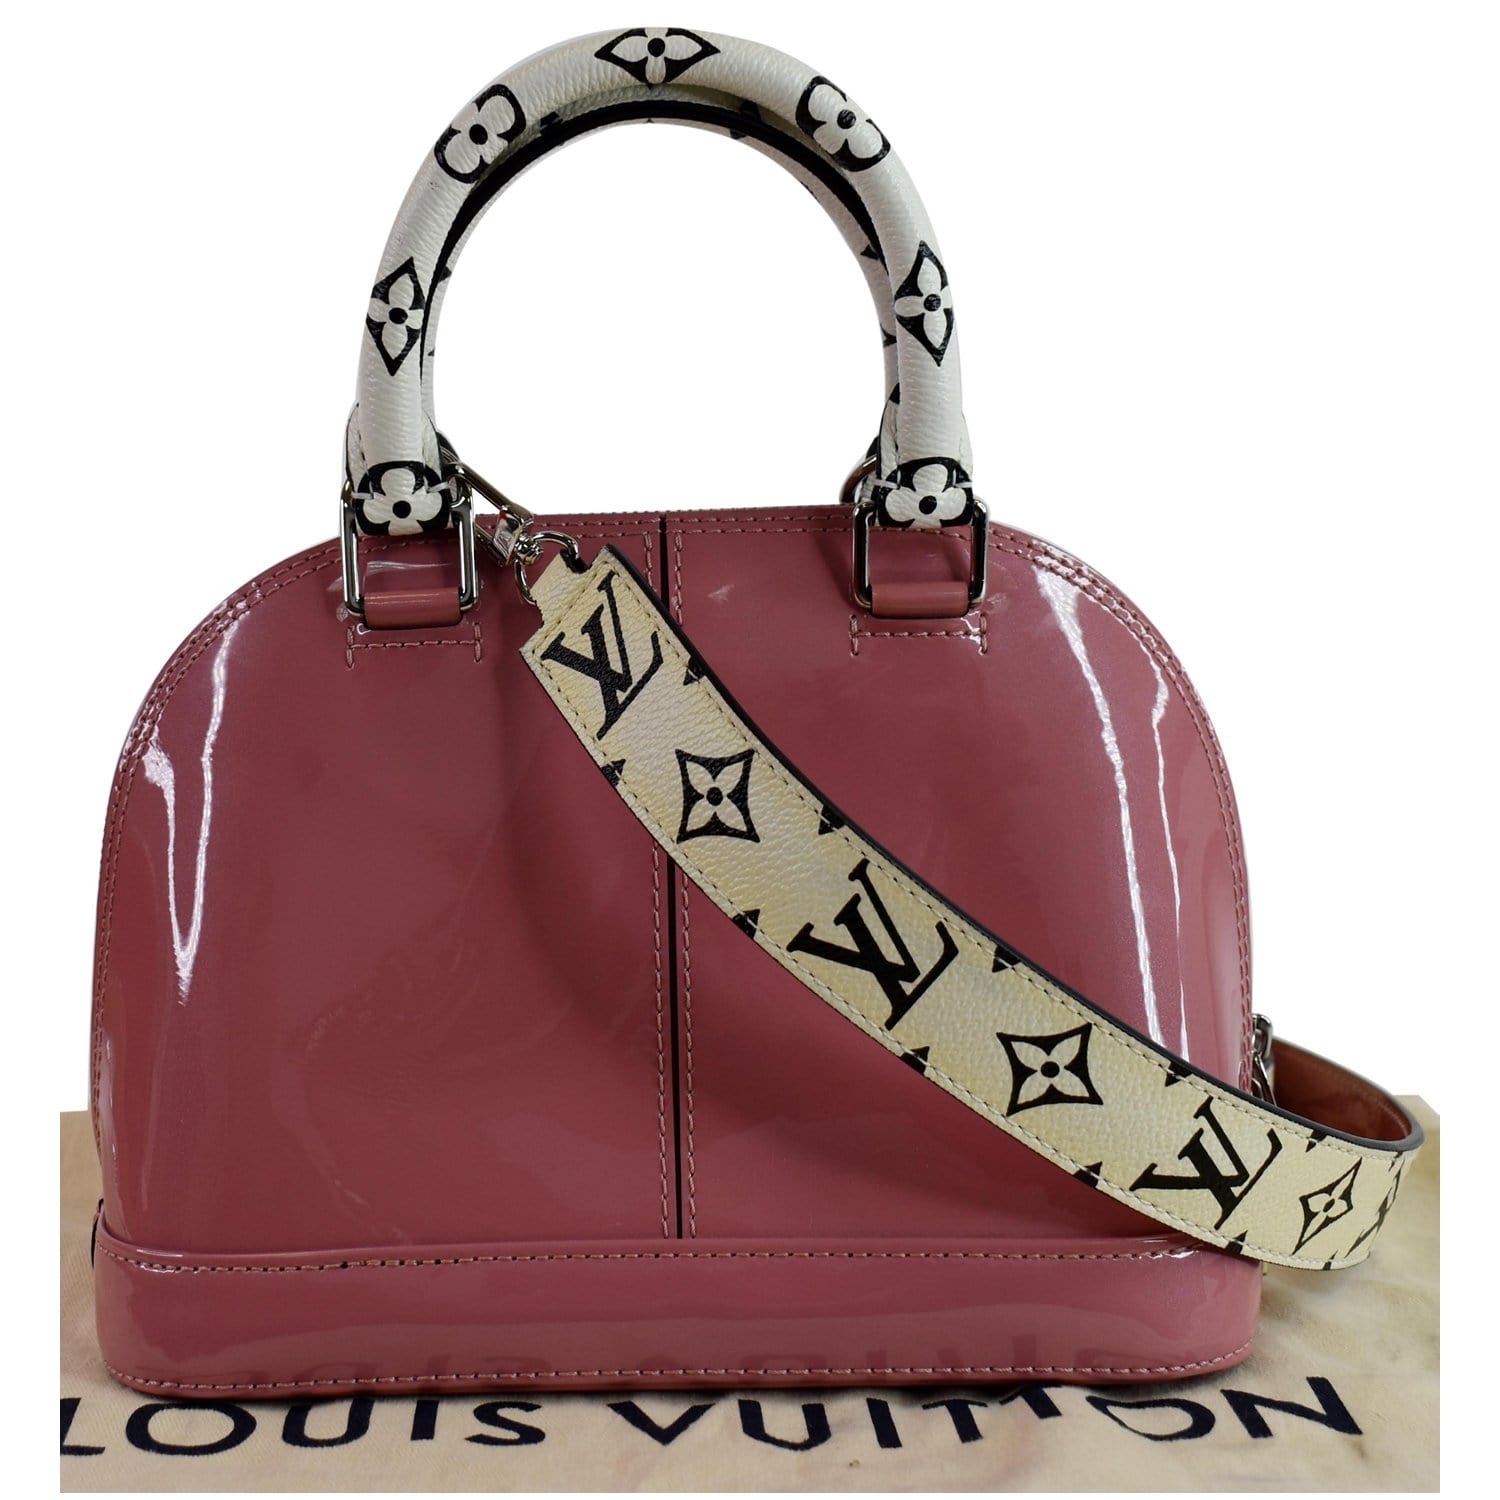 Louis Vuitton, Bags, Authentic Louis Vuitton Patent Leather Bag